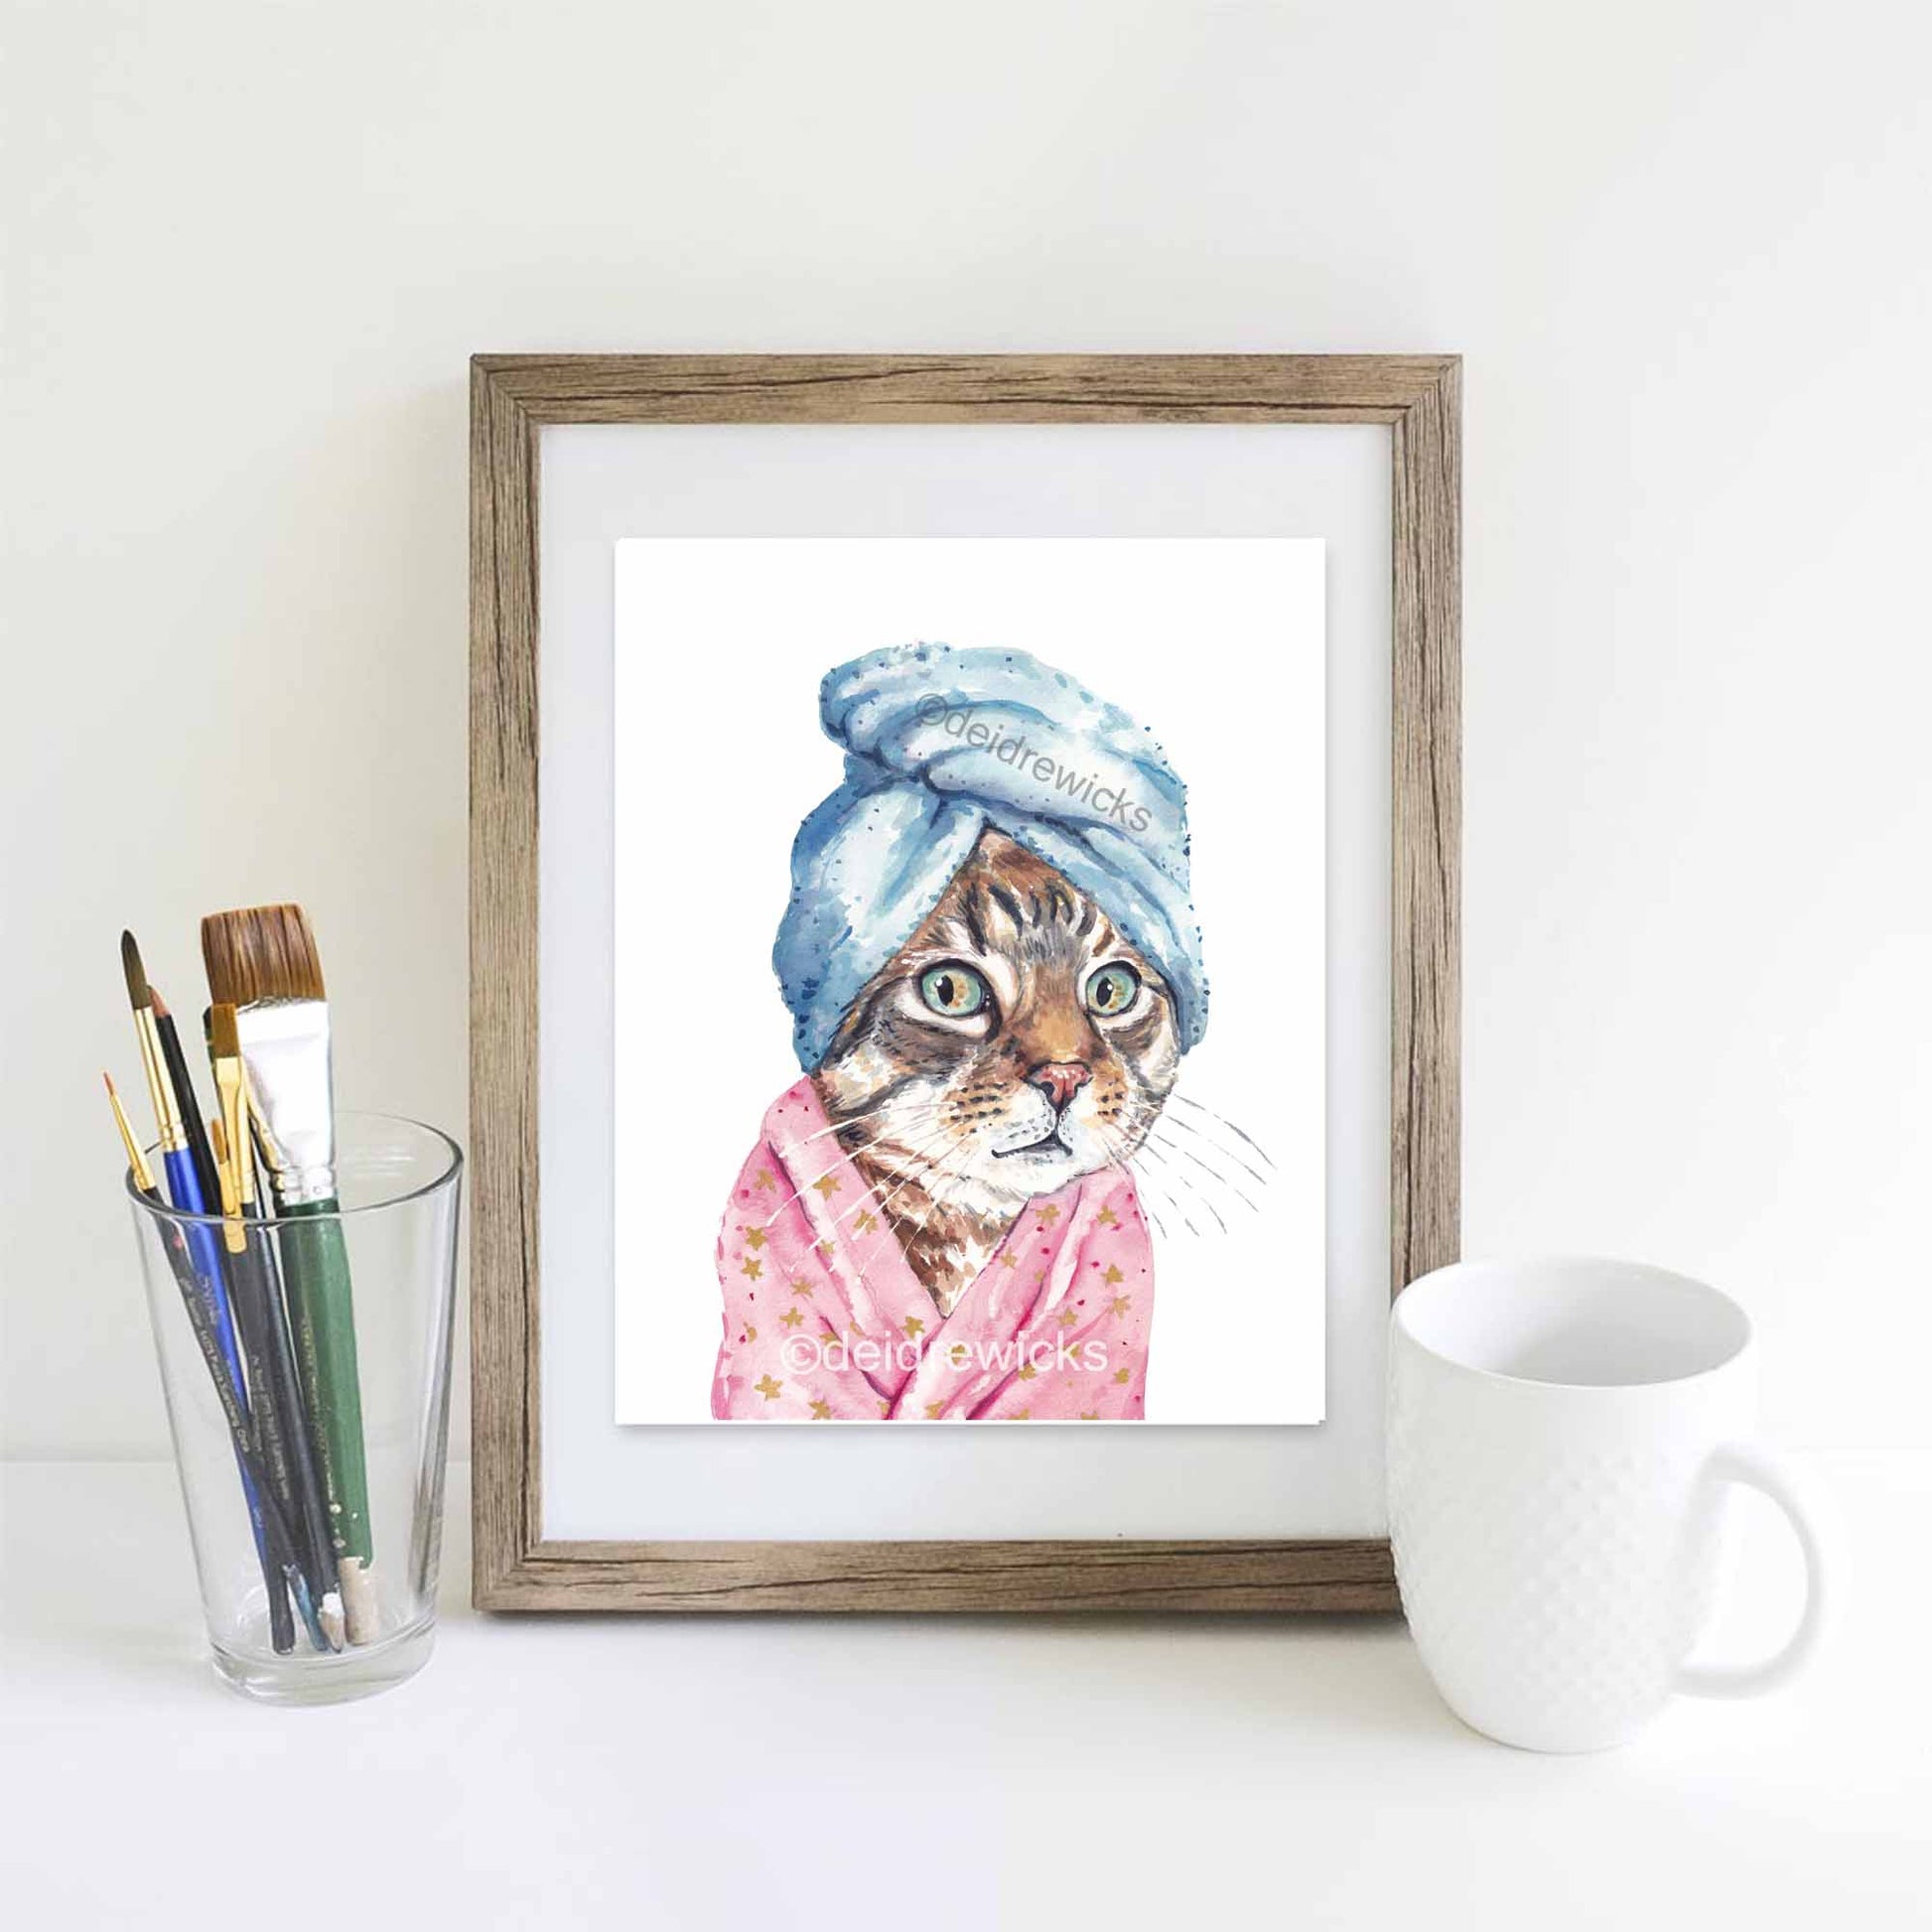 Framed cat watercolor print by Deidre Wicks